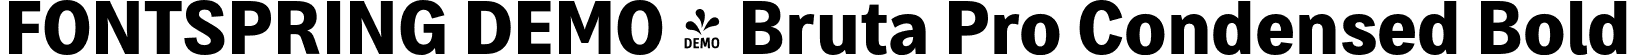 FONTSPRING DEMO - Bruta Pro Condensed Bold font | Fontspring-DEMO-brutaprocondensed-bold.otf